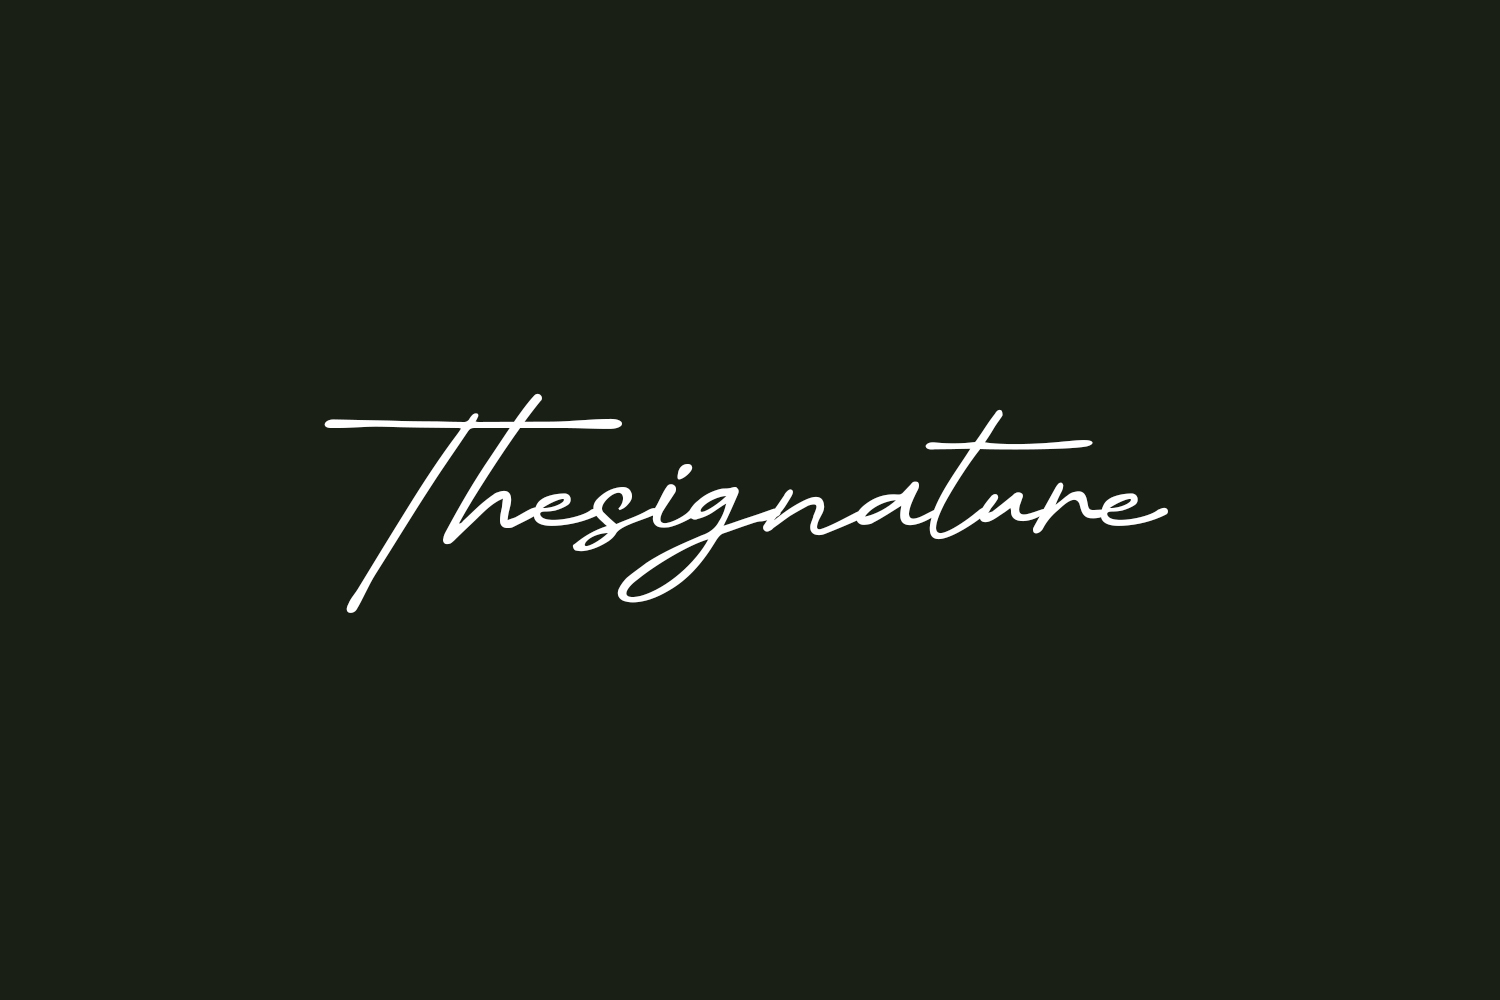 Thesignature Free Font